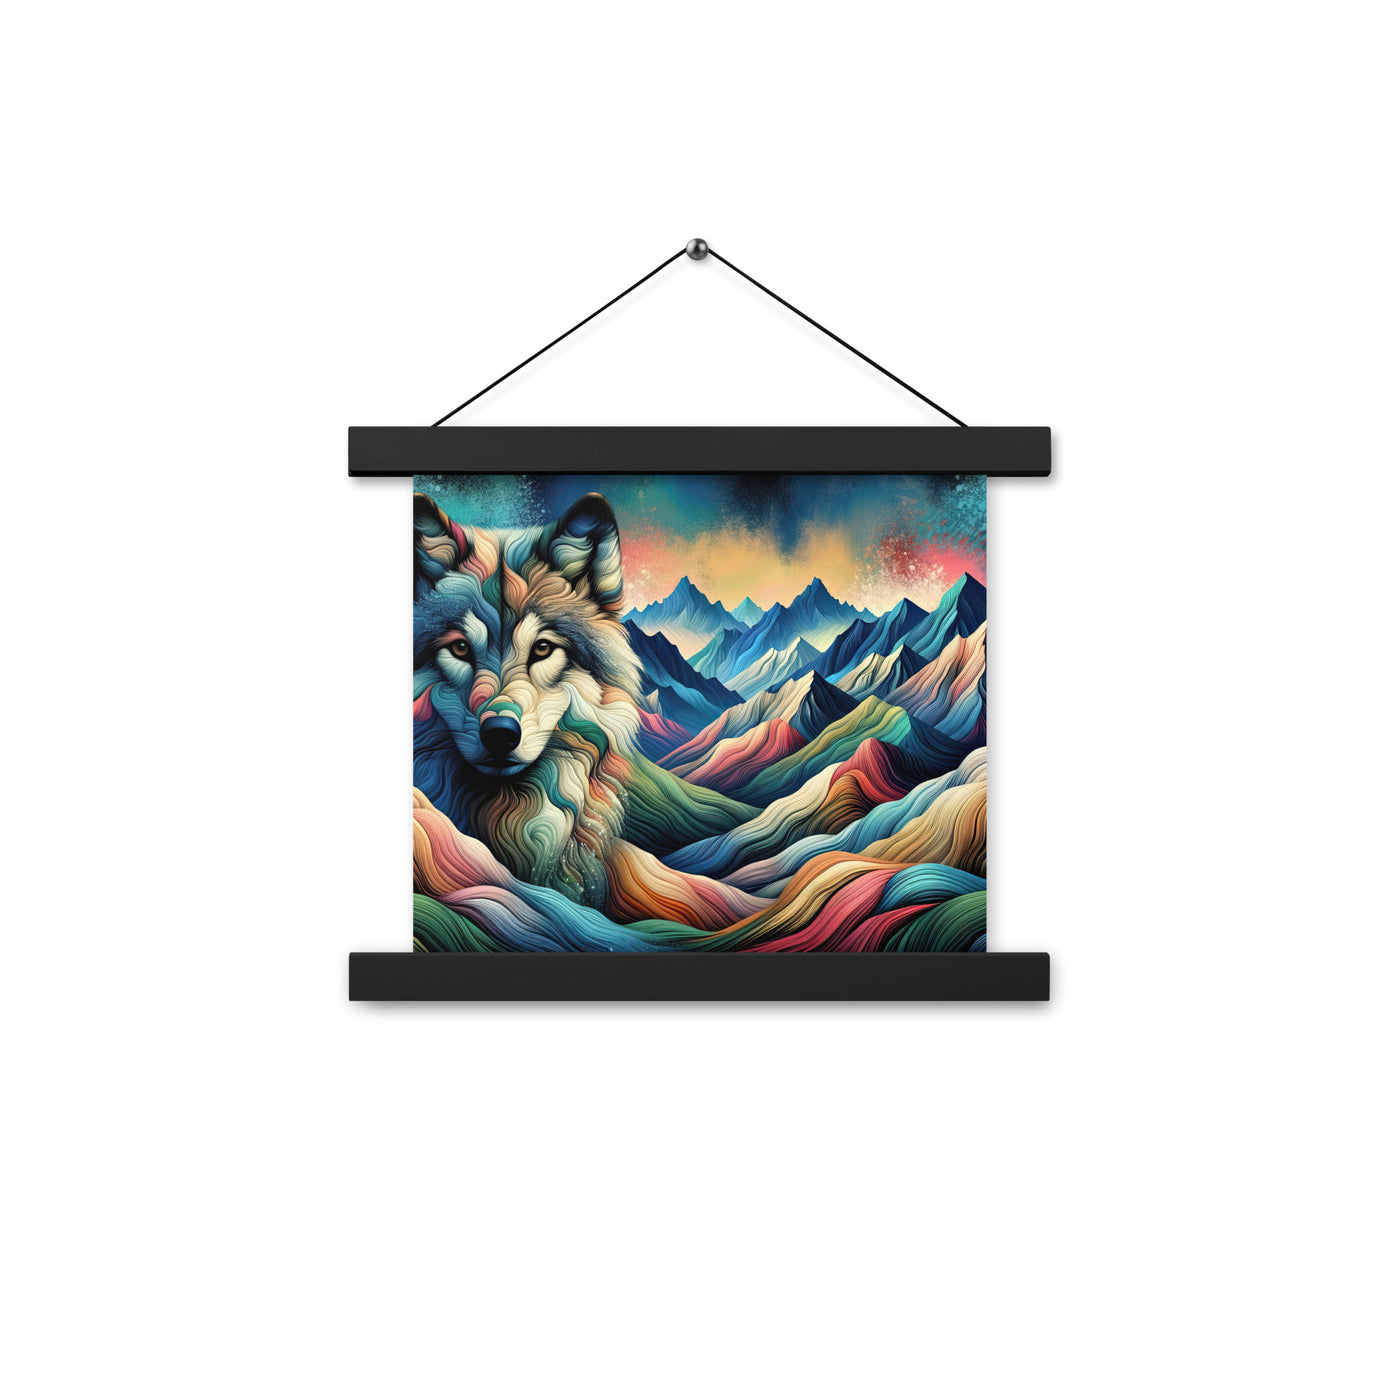 Traumhaftes Alpenpanorama mit Wolf in wechselnden Farben und Mustern (AN) - Premium Poster mit Aufhängung xxx yyy zzz 25.4 x 25.4 cm